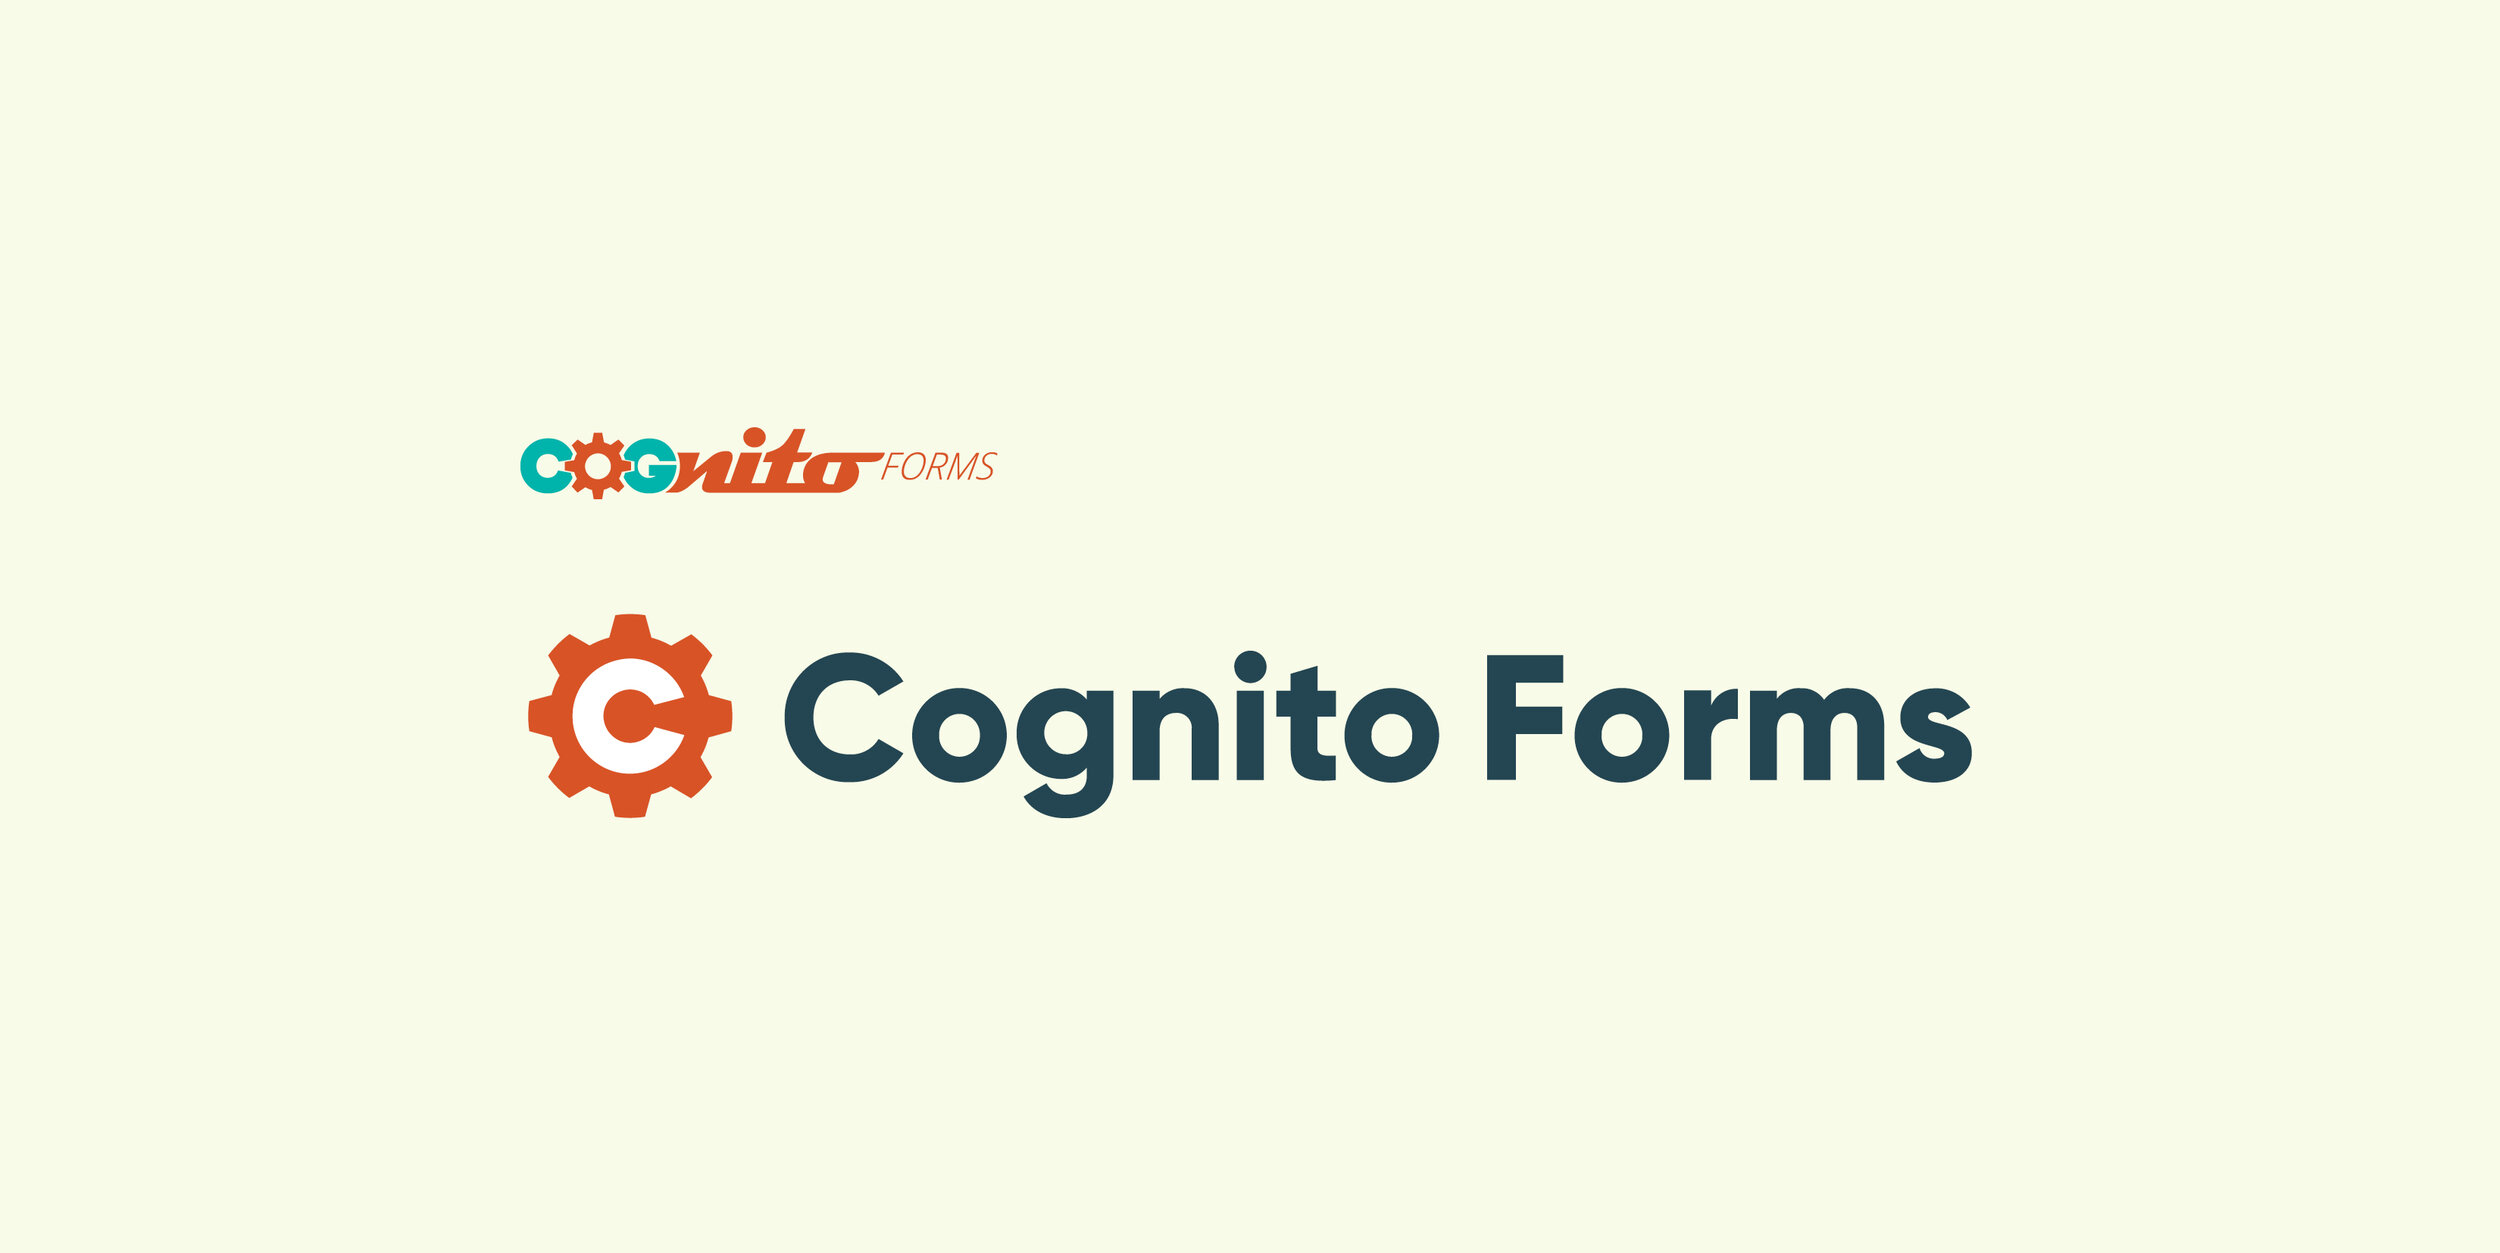 CognitoForms-Rebrand.jpg